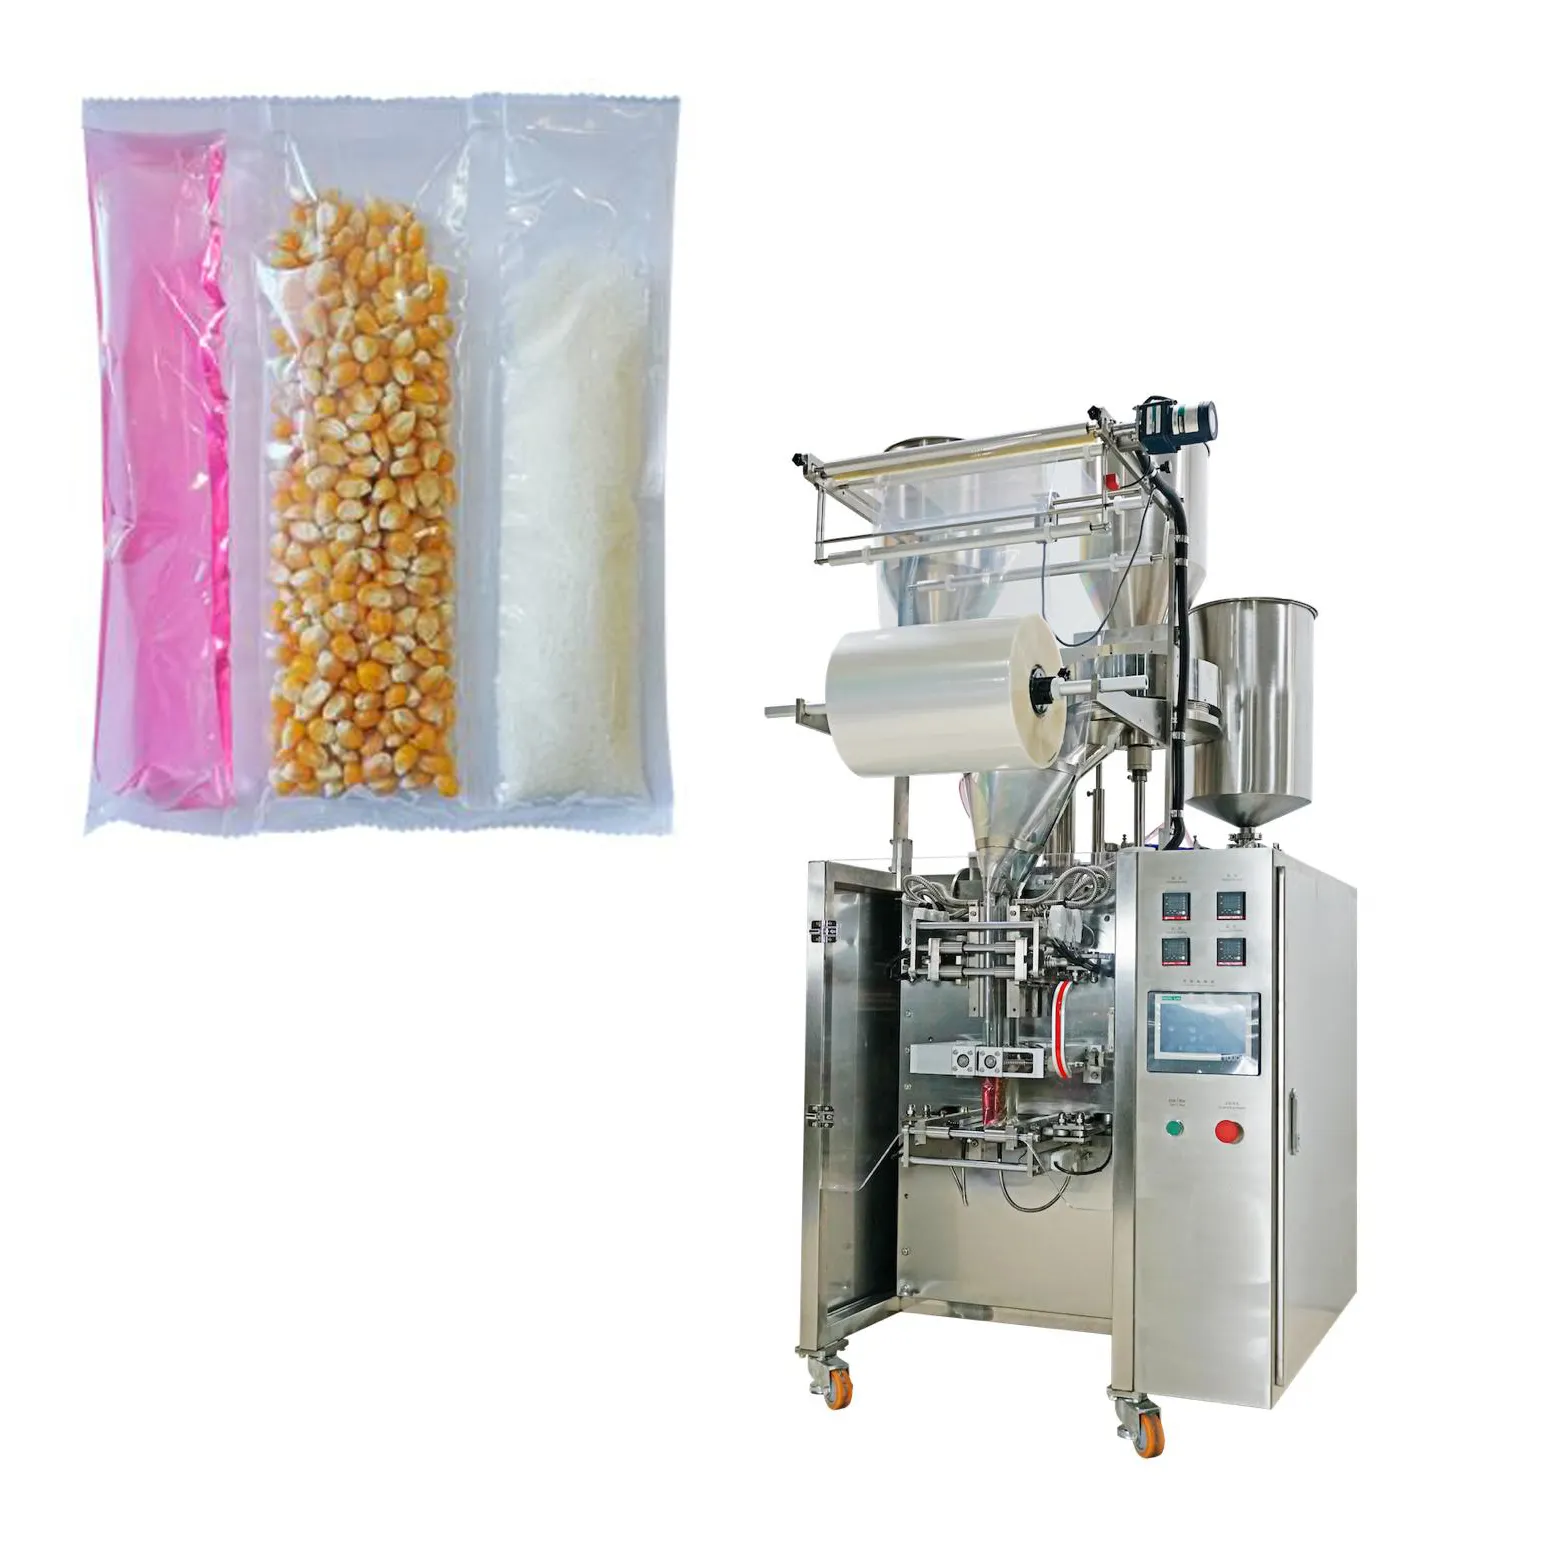 Macchina confezionatrice verticale per popcorn a microonde per uso domestico, zucchero, noccioli di mais